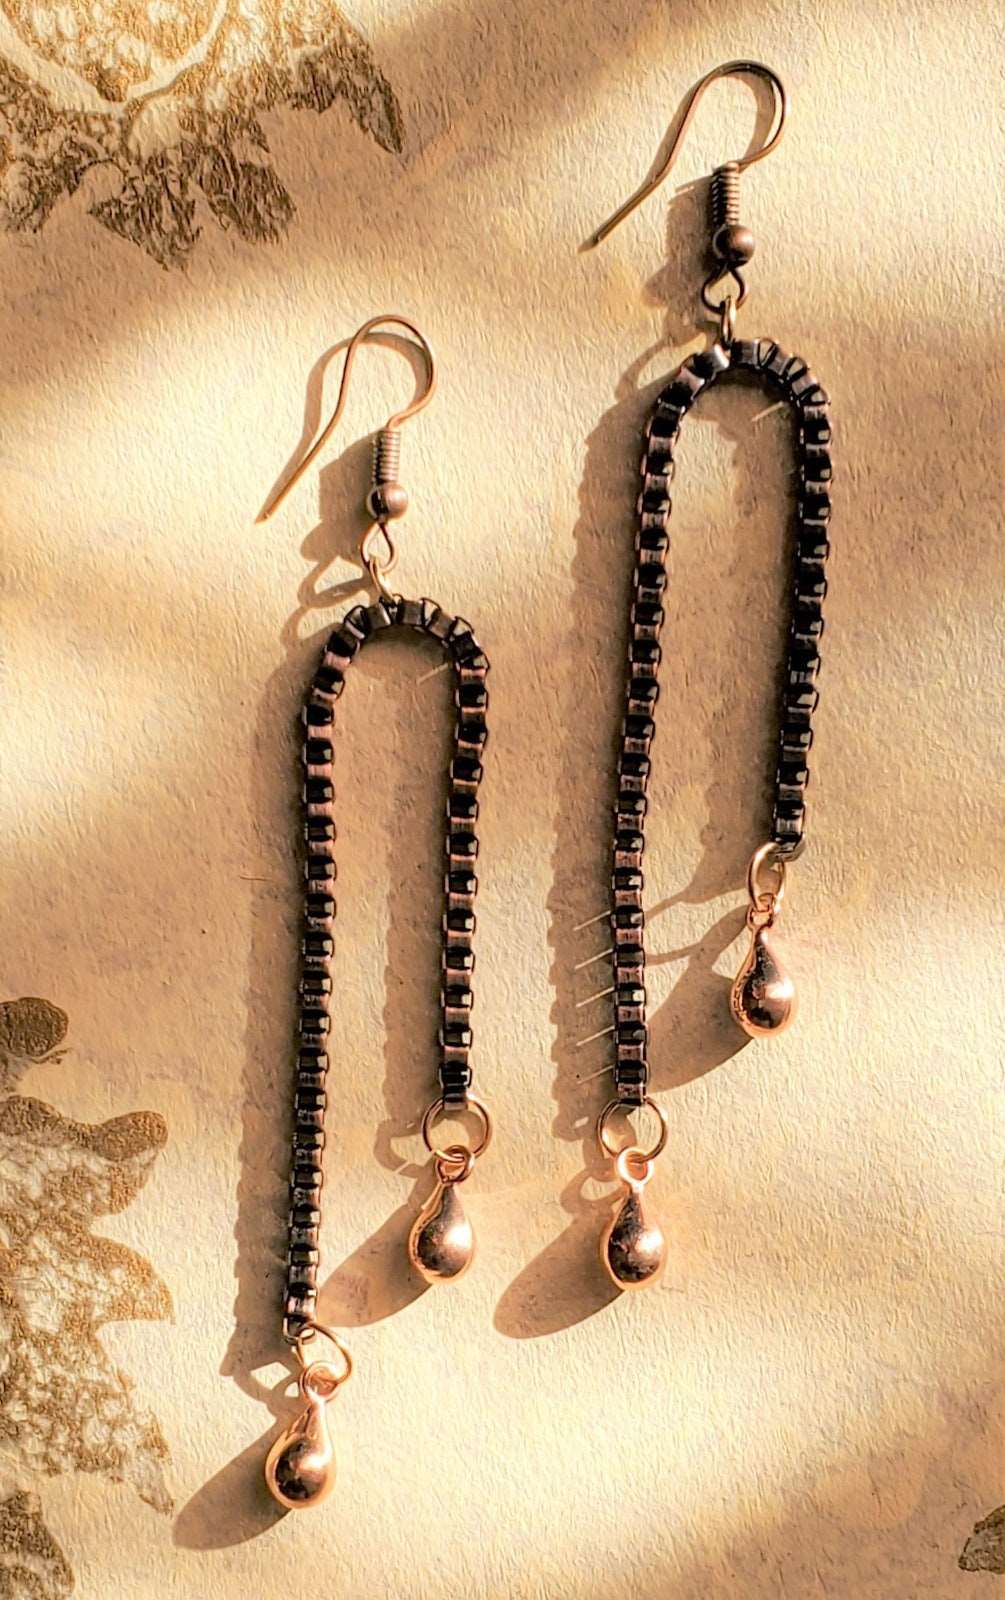 Dangle Earrings, Copper Chain Dangle Earrings, Handmade for women, photo of earrings on a yellow shadows